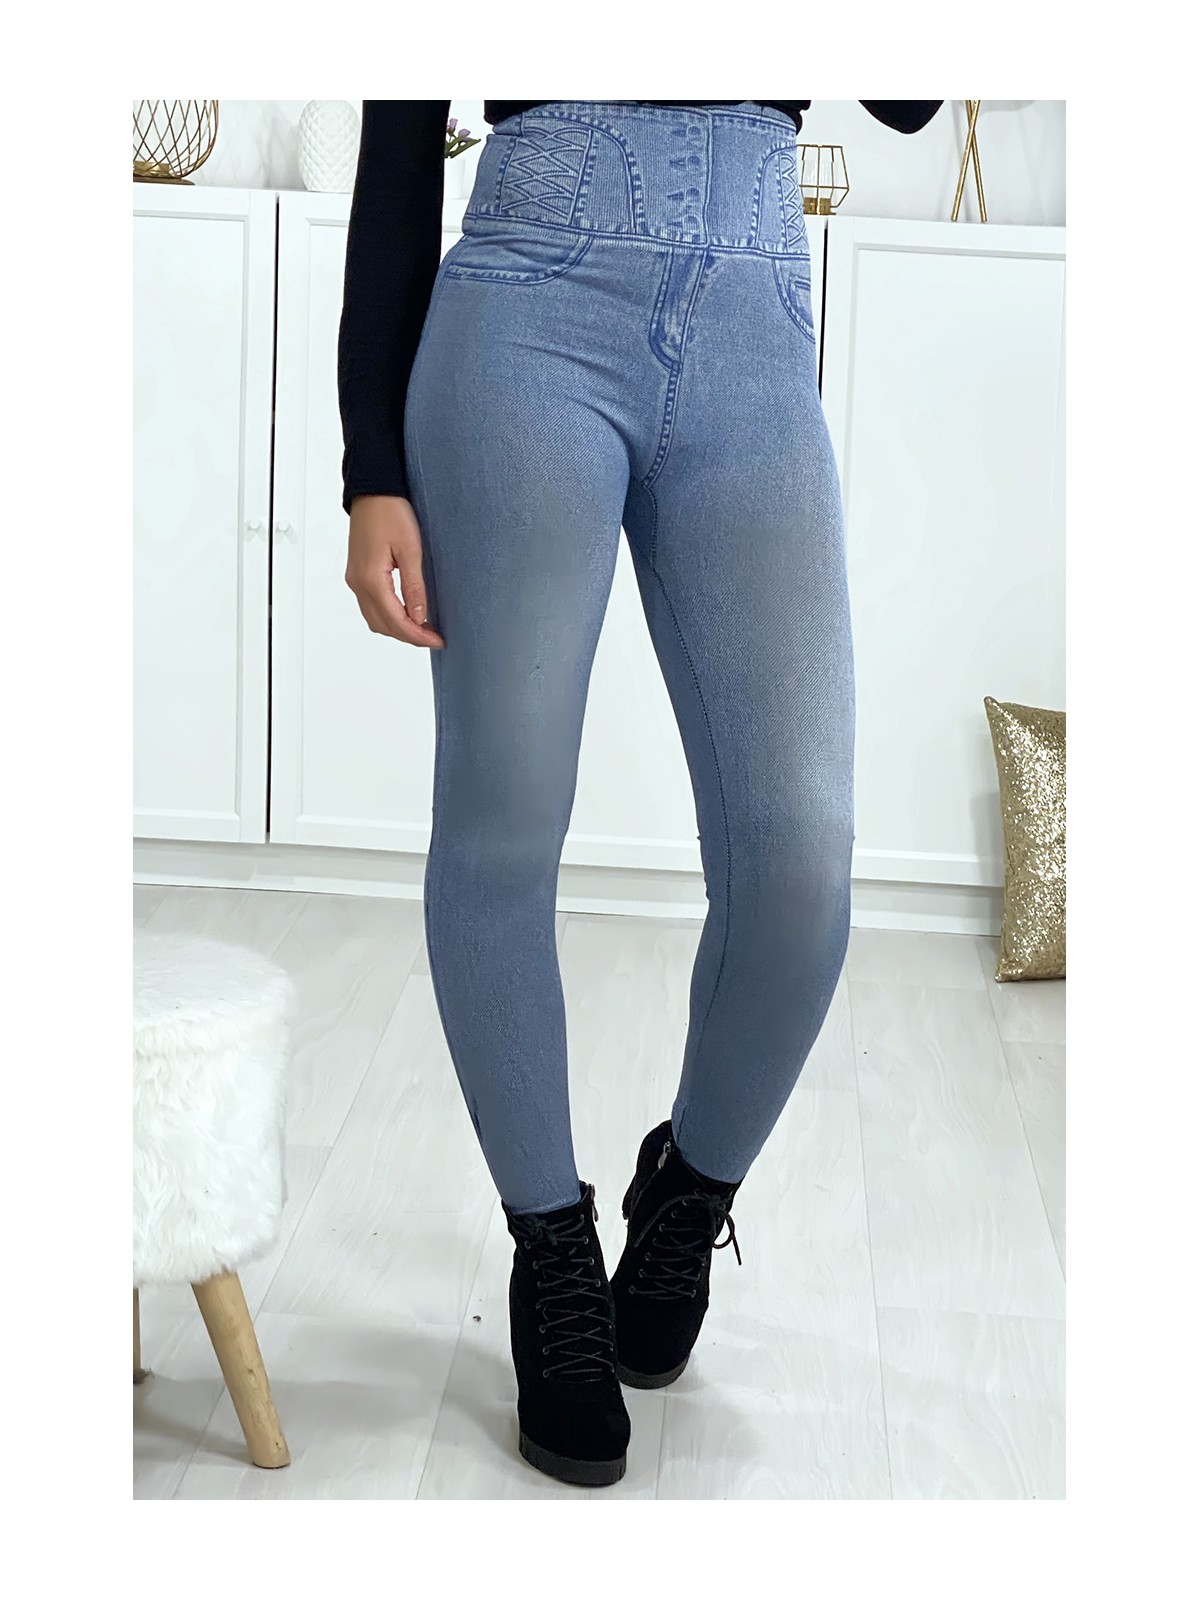 Leggings minceur taille haute effet jeans - 4